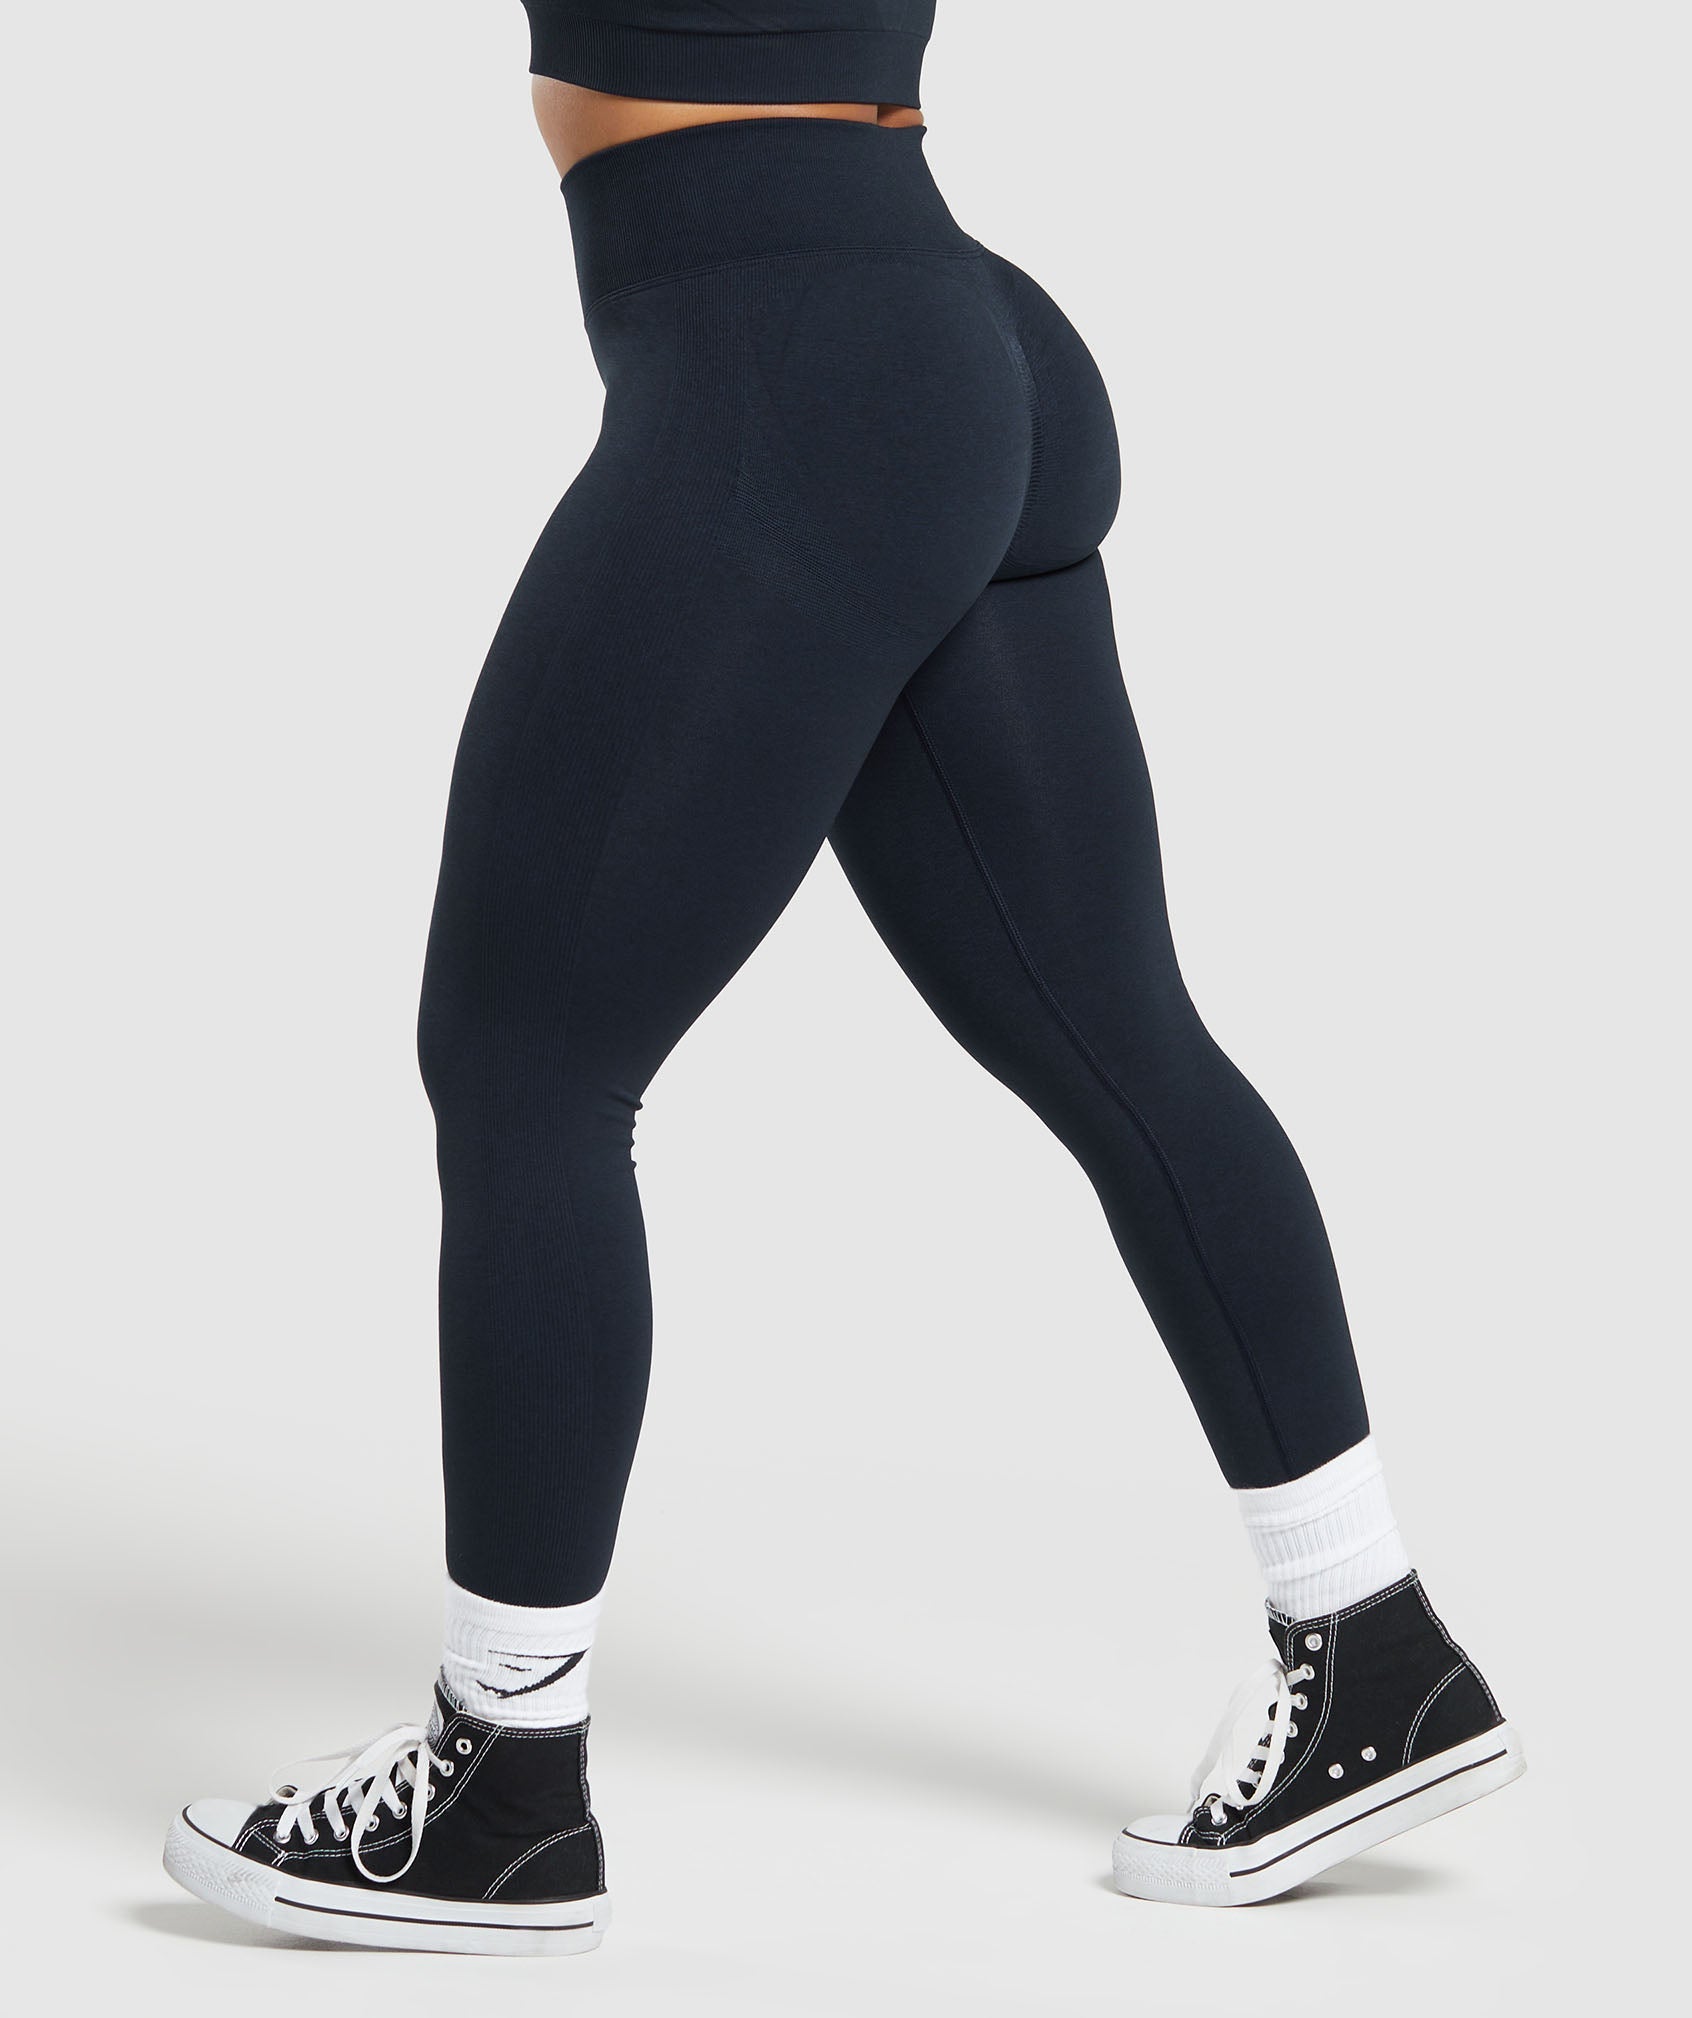 legs that never end ✨ wearing the gymshark lift contour leggings & spo, Leggins